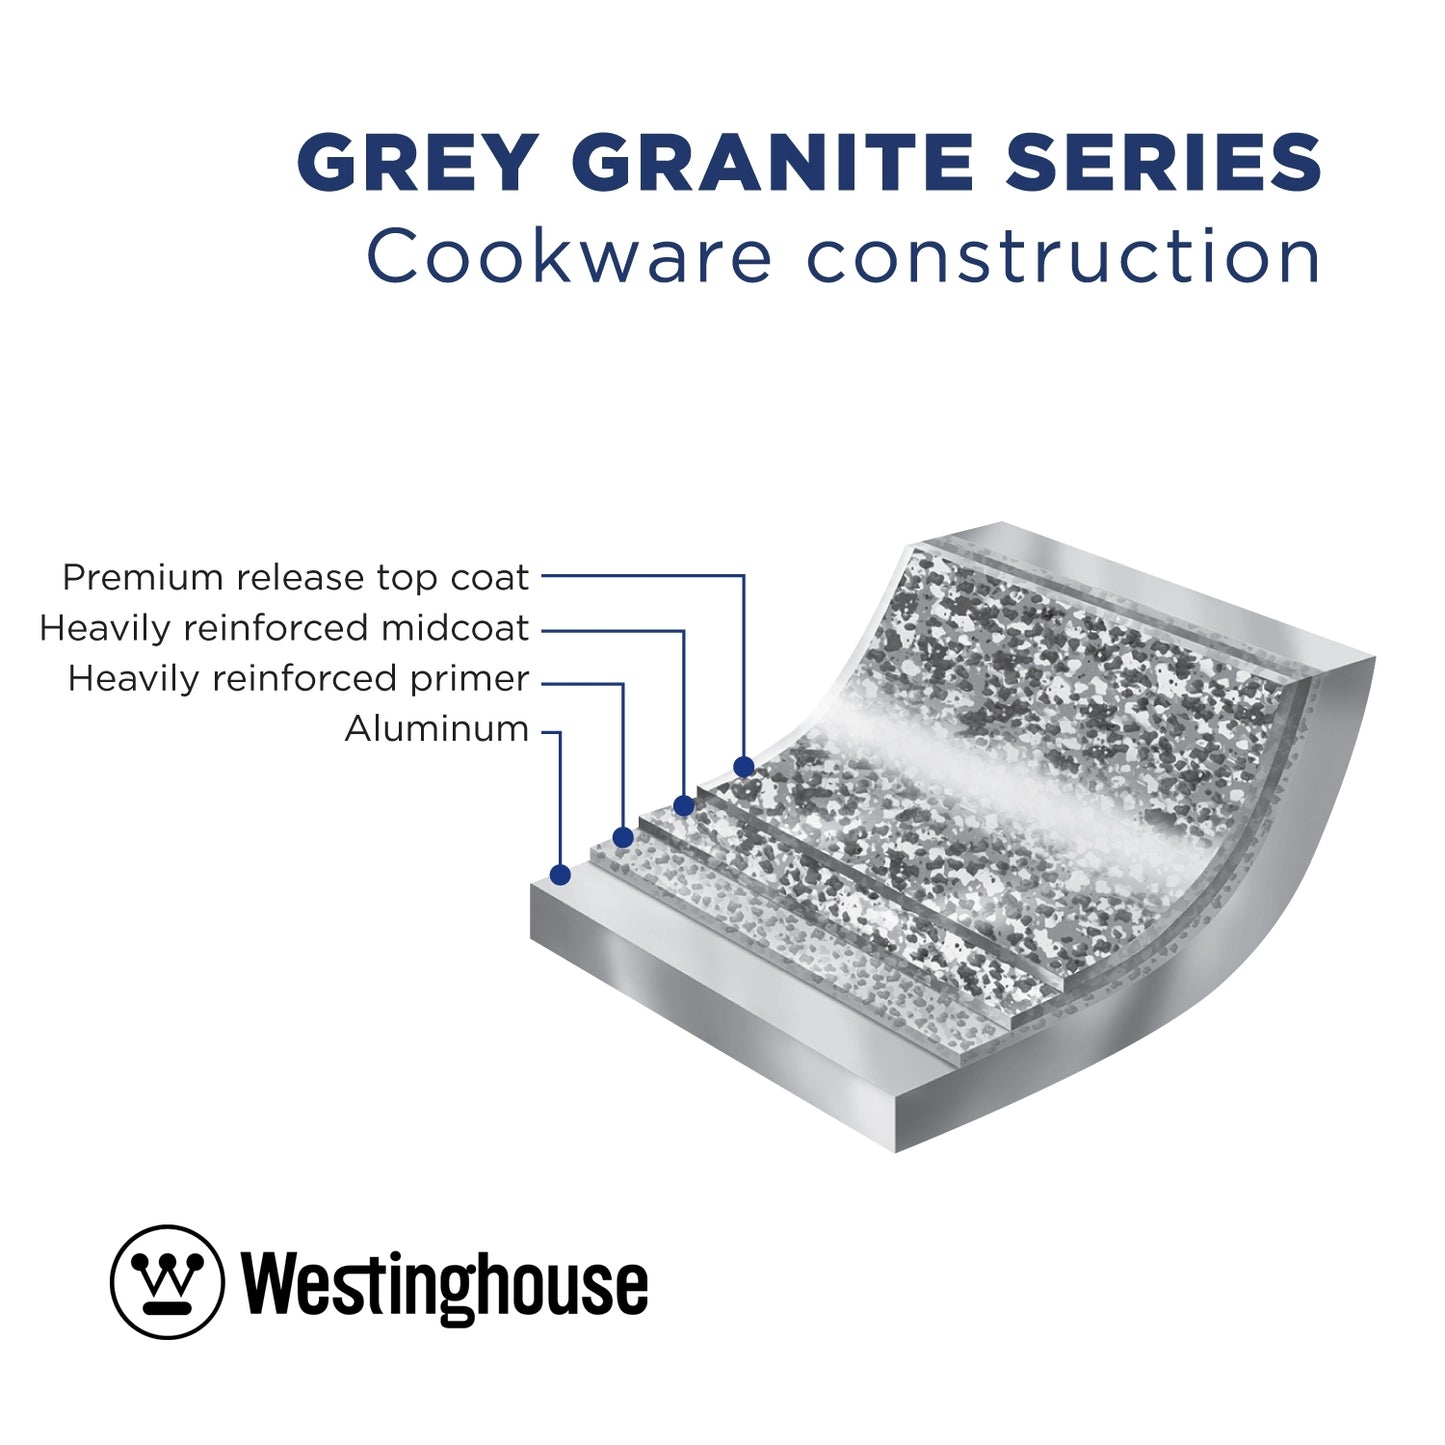 Grey Granite Grillpfanne